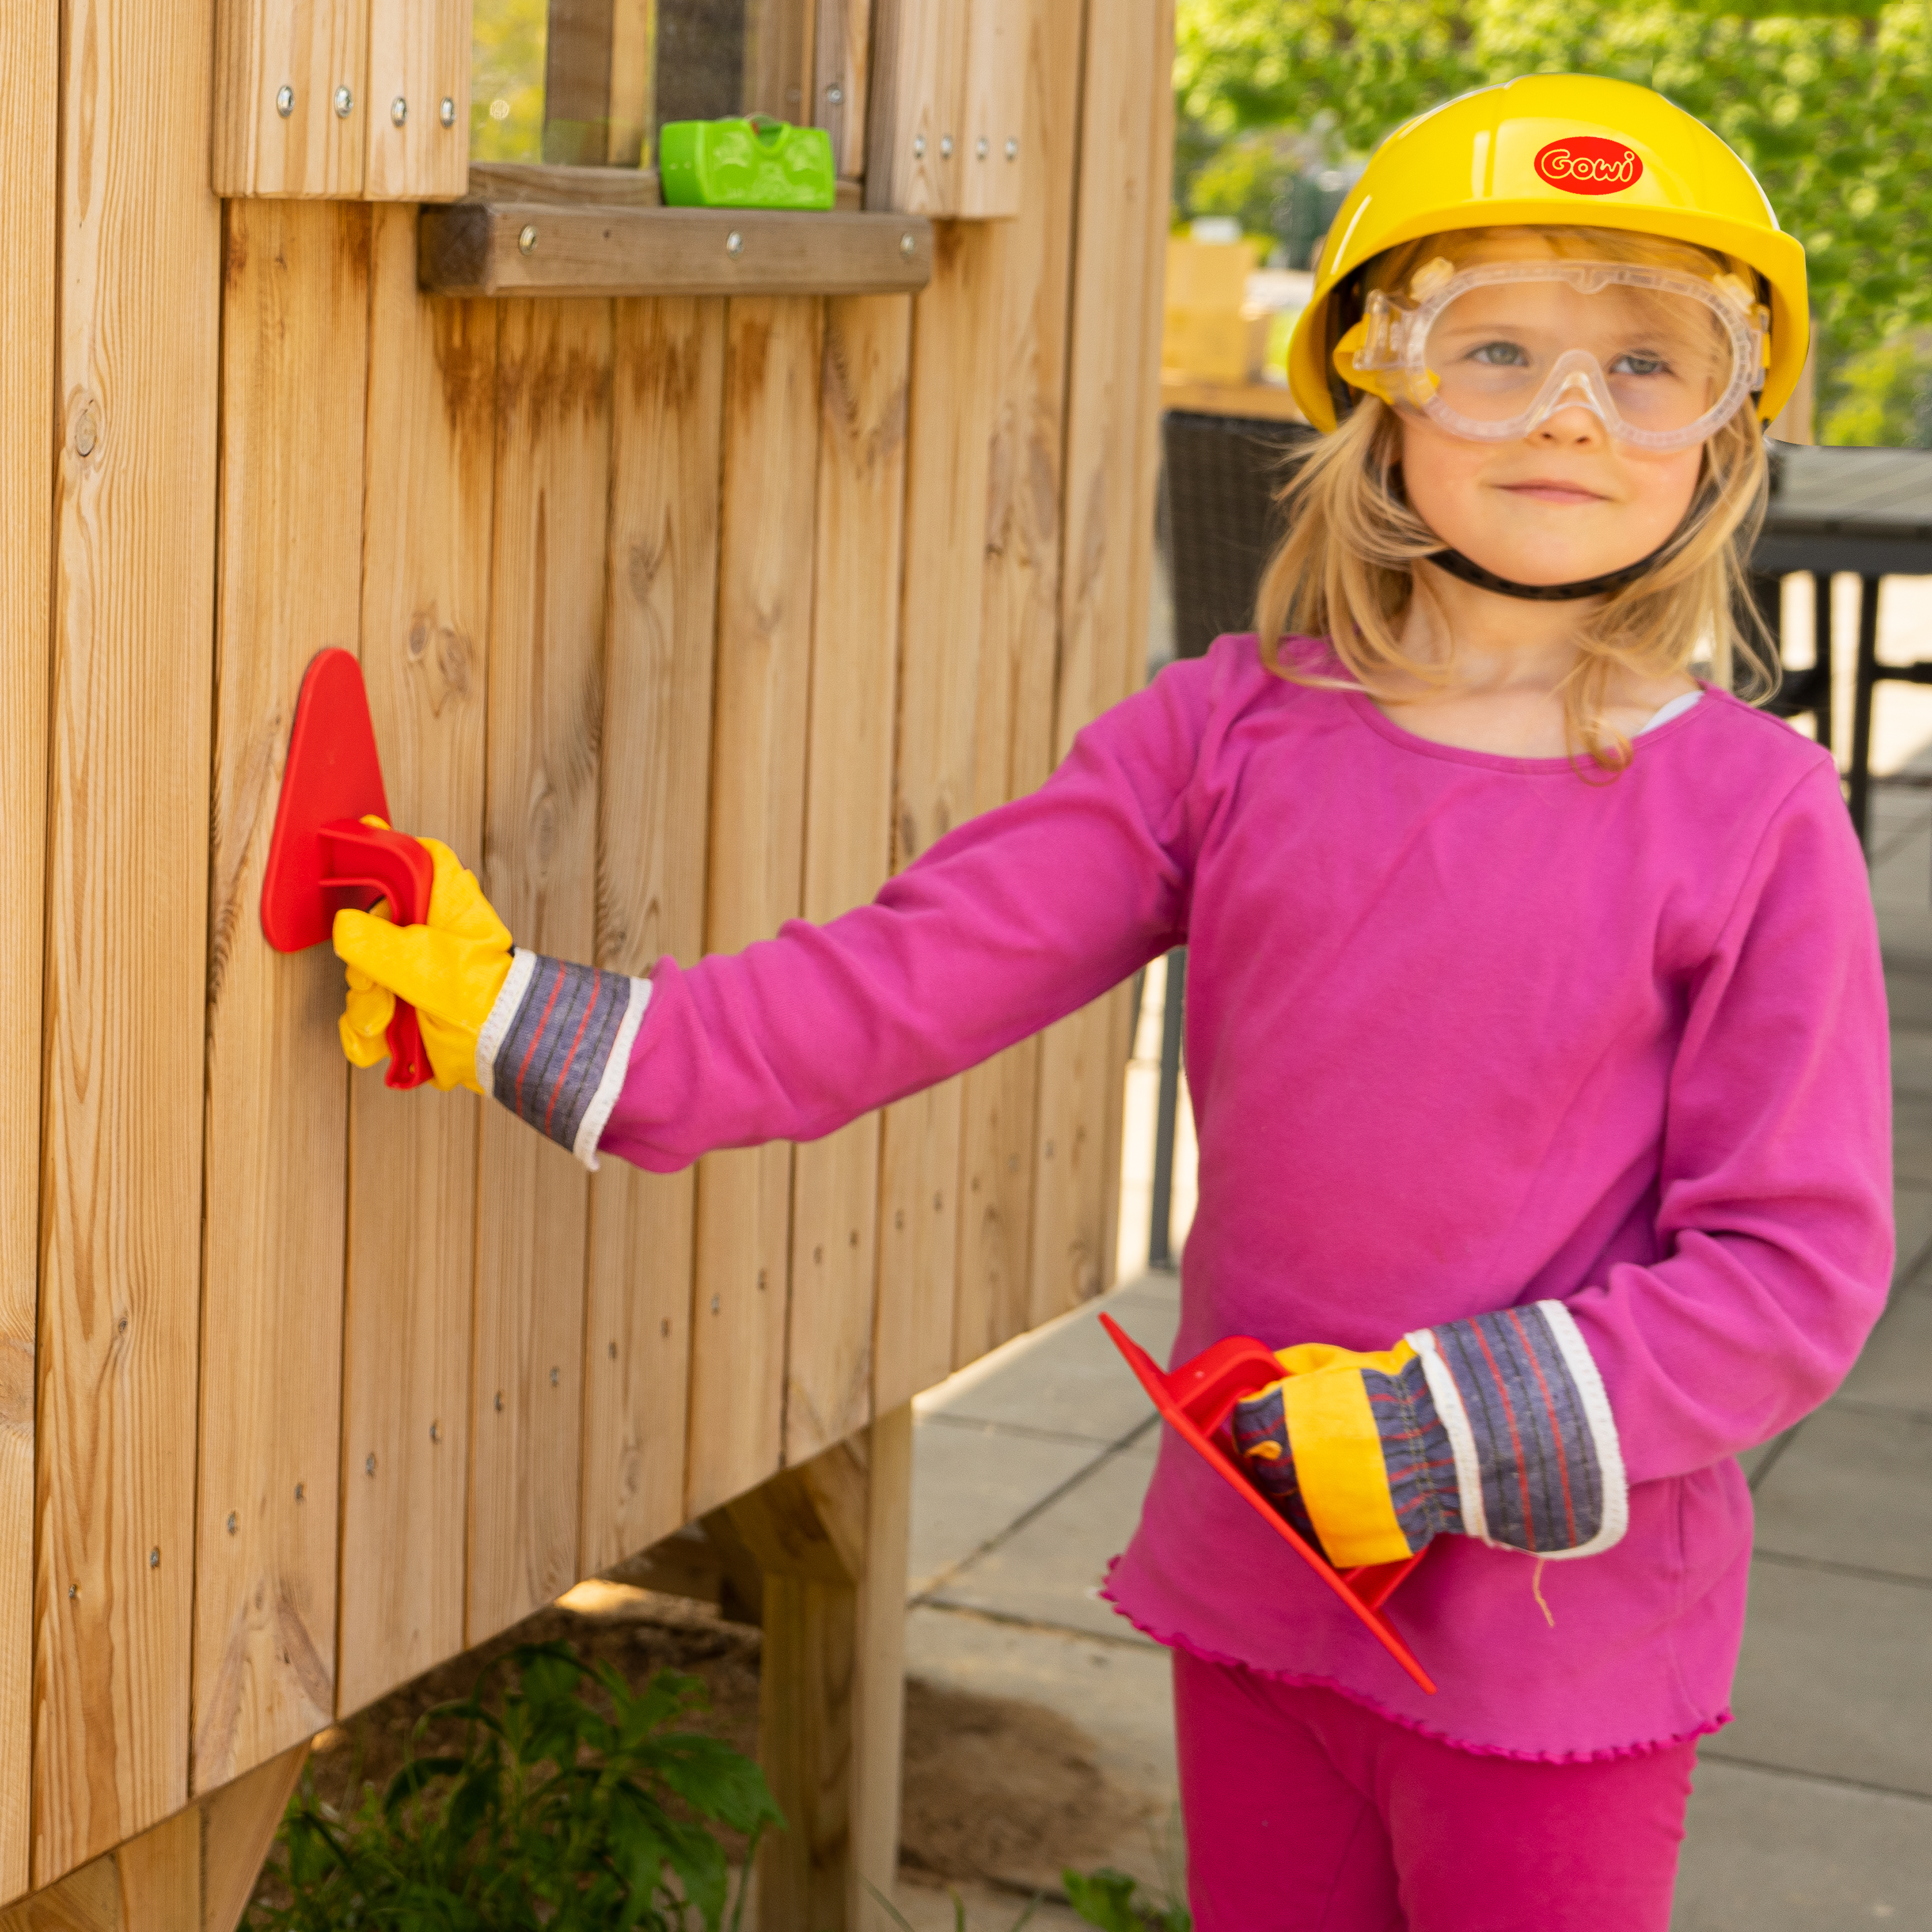 Blcculi Bauhelm für Kinder,Schutzhelm Kinder Bauparty-Hüte  Spielzeug,Bauarbeiterhelm Kinder,Safety Helmet Yellow,Weiche Gelber Bauhelm  für